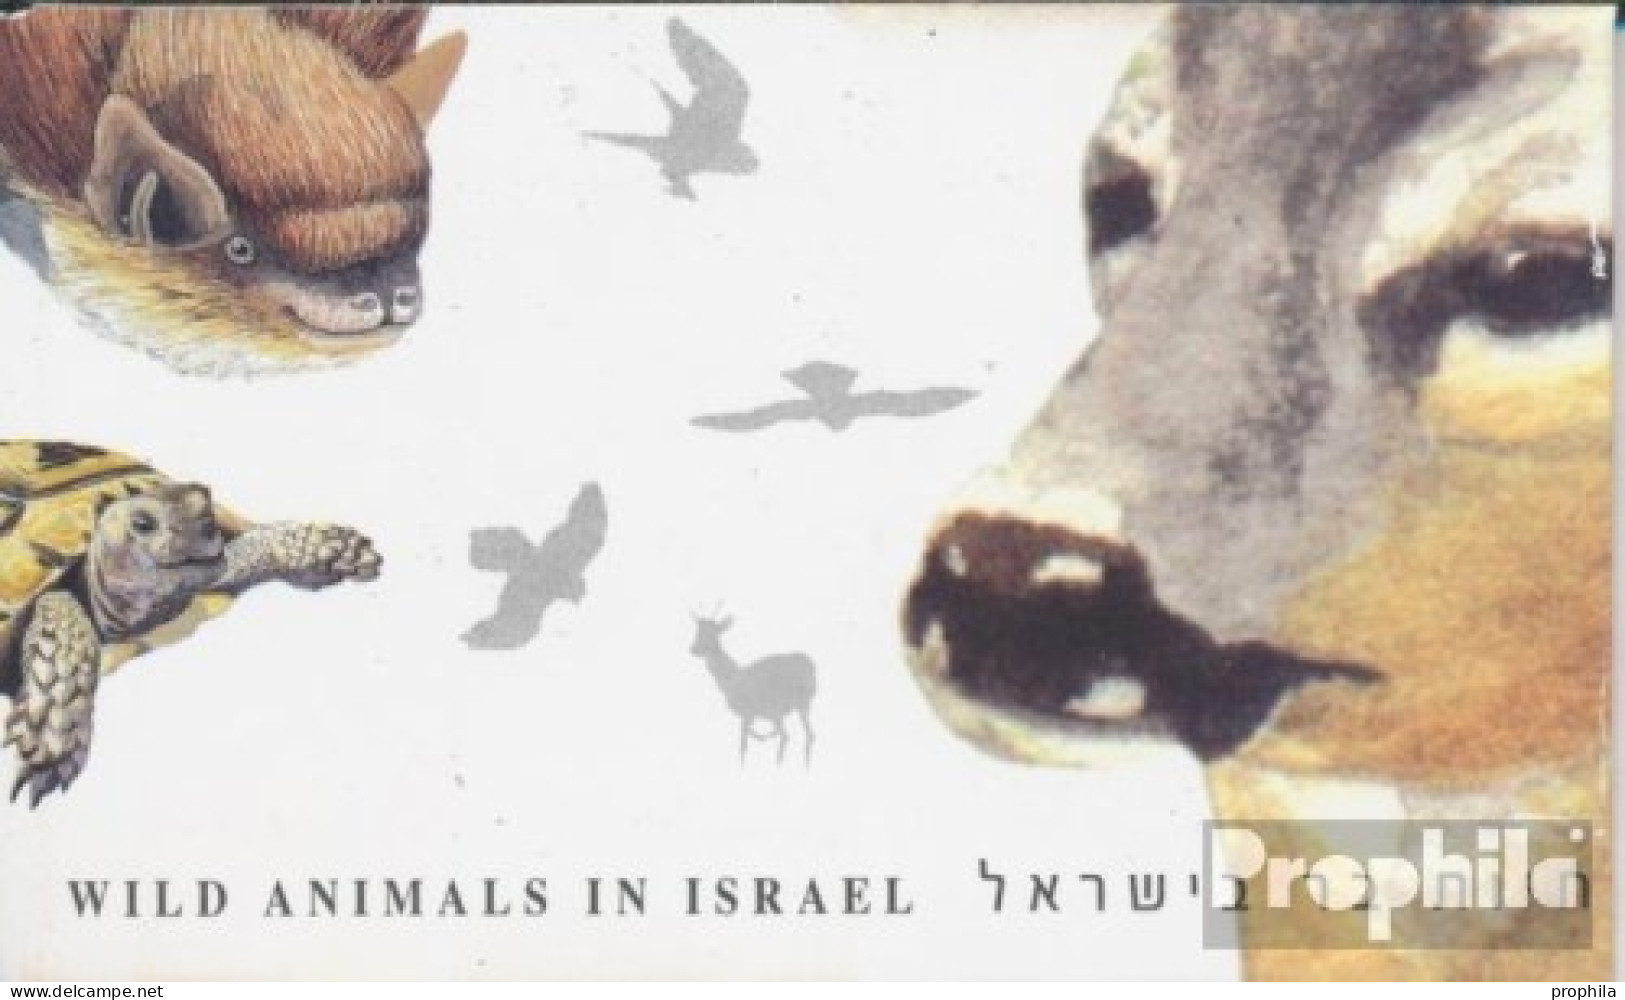 Israel 1612-1615 MH (kompl.Ausg.) Markenheftchen Postfrisch 2001 Bedrohte Tierarten - Nuevos (sin Tab)